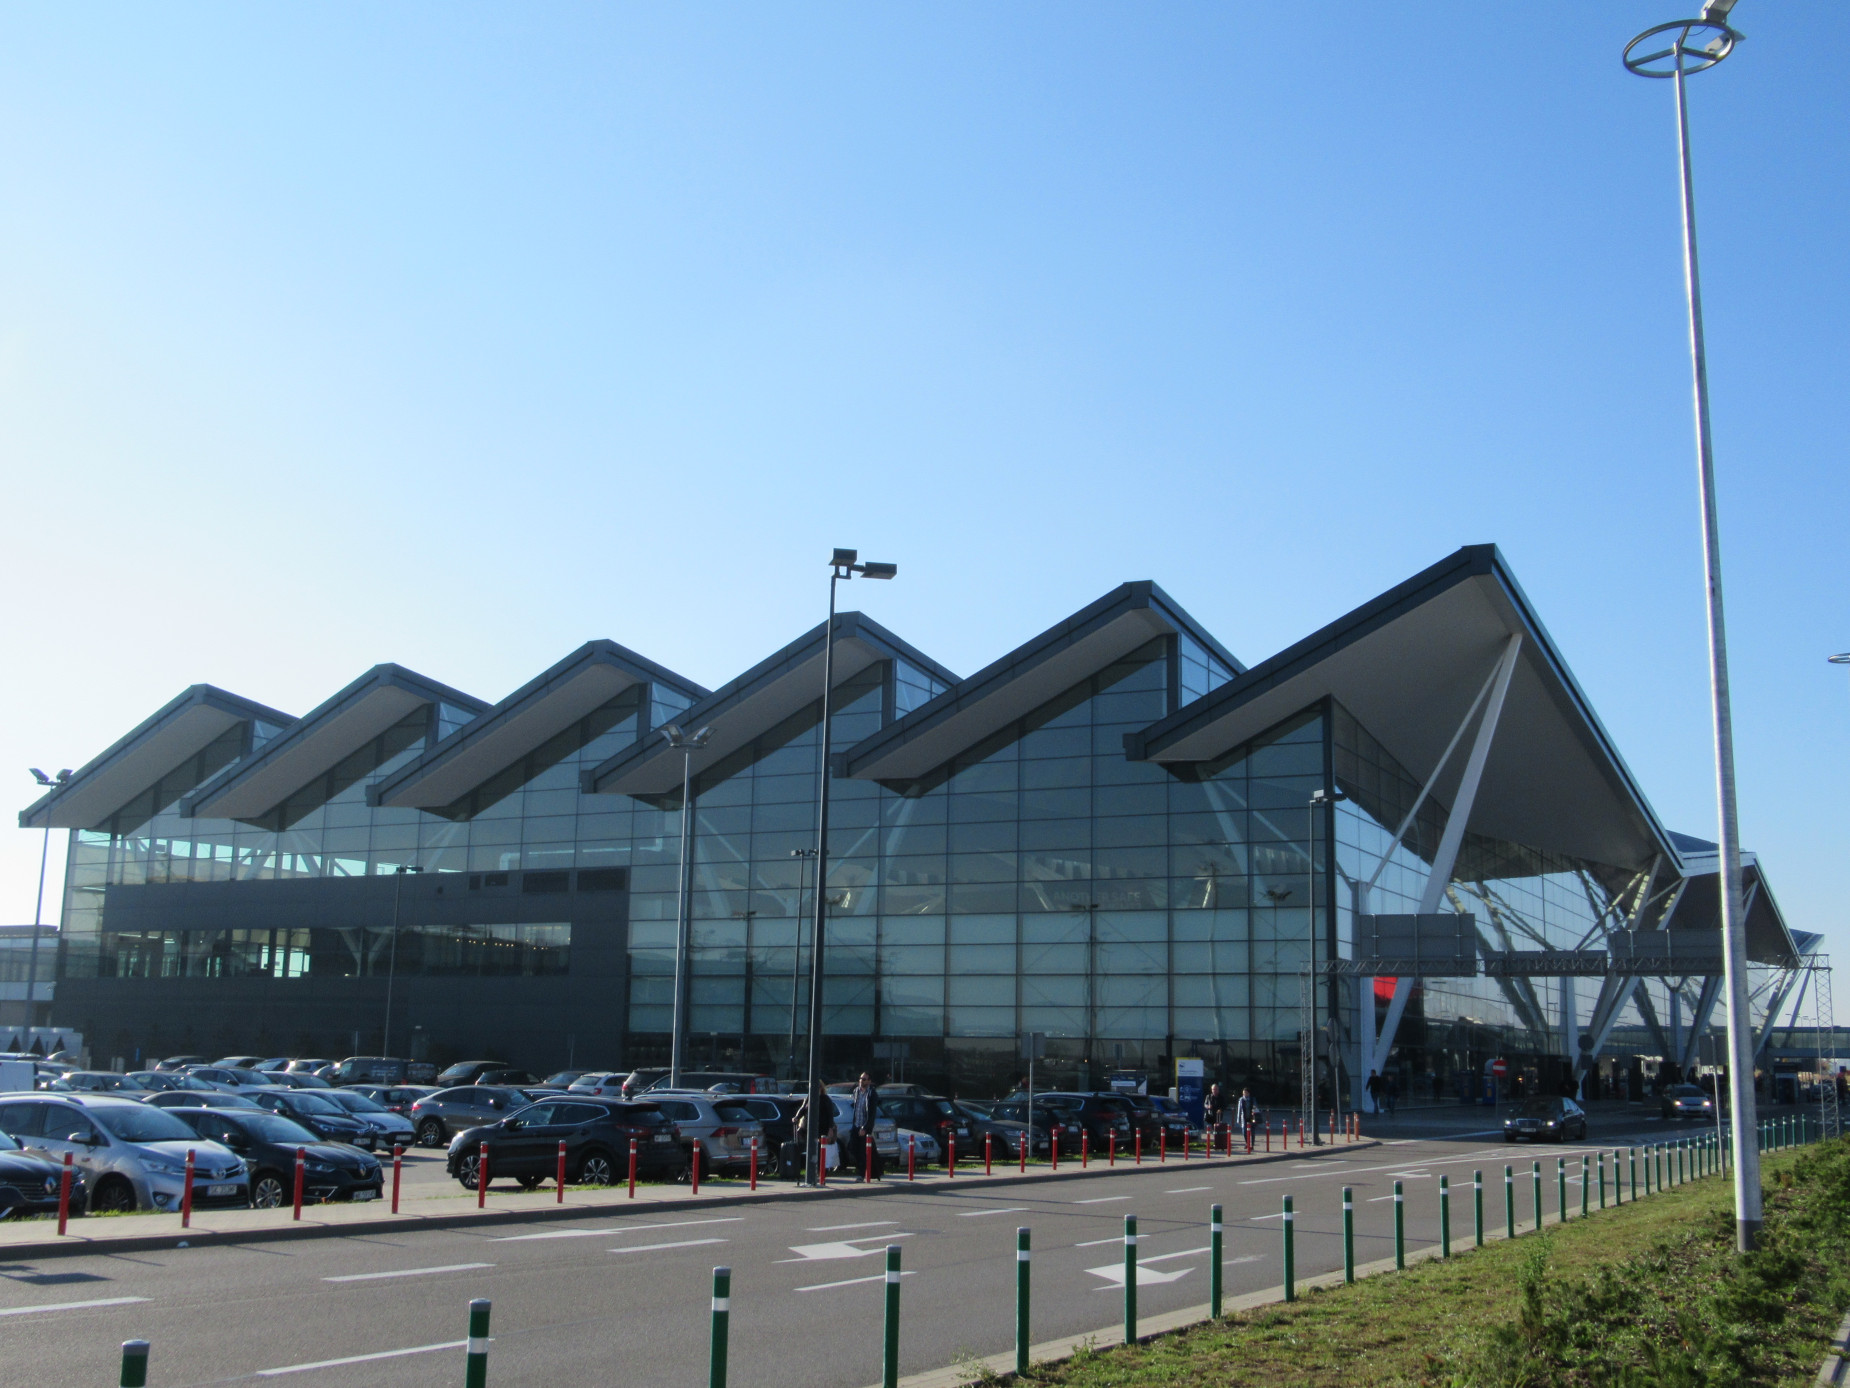 Ponad 4 mln pasażerów na gdańskim lotnisku. To ważny krok do osiągnięcia 5 mln pasażerów w całym 2019 roku